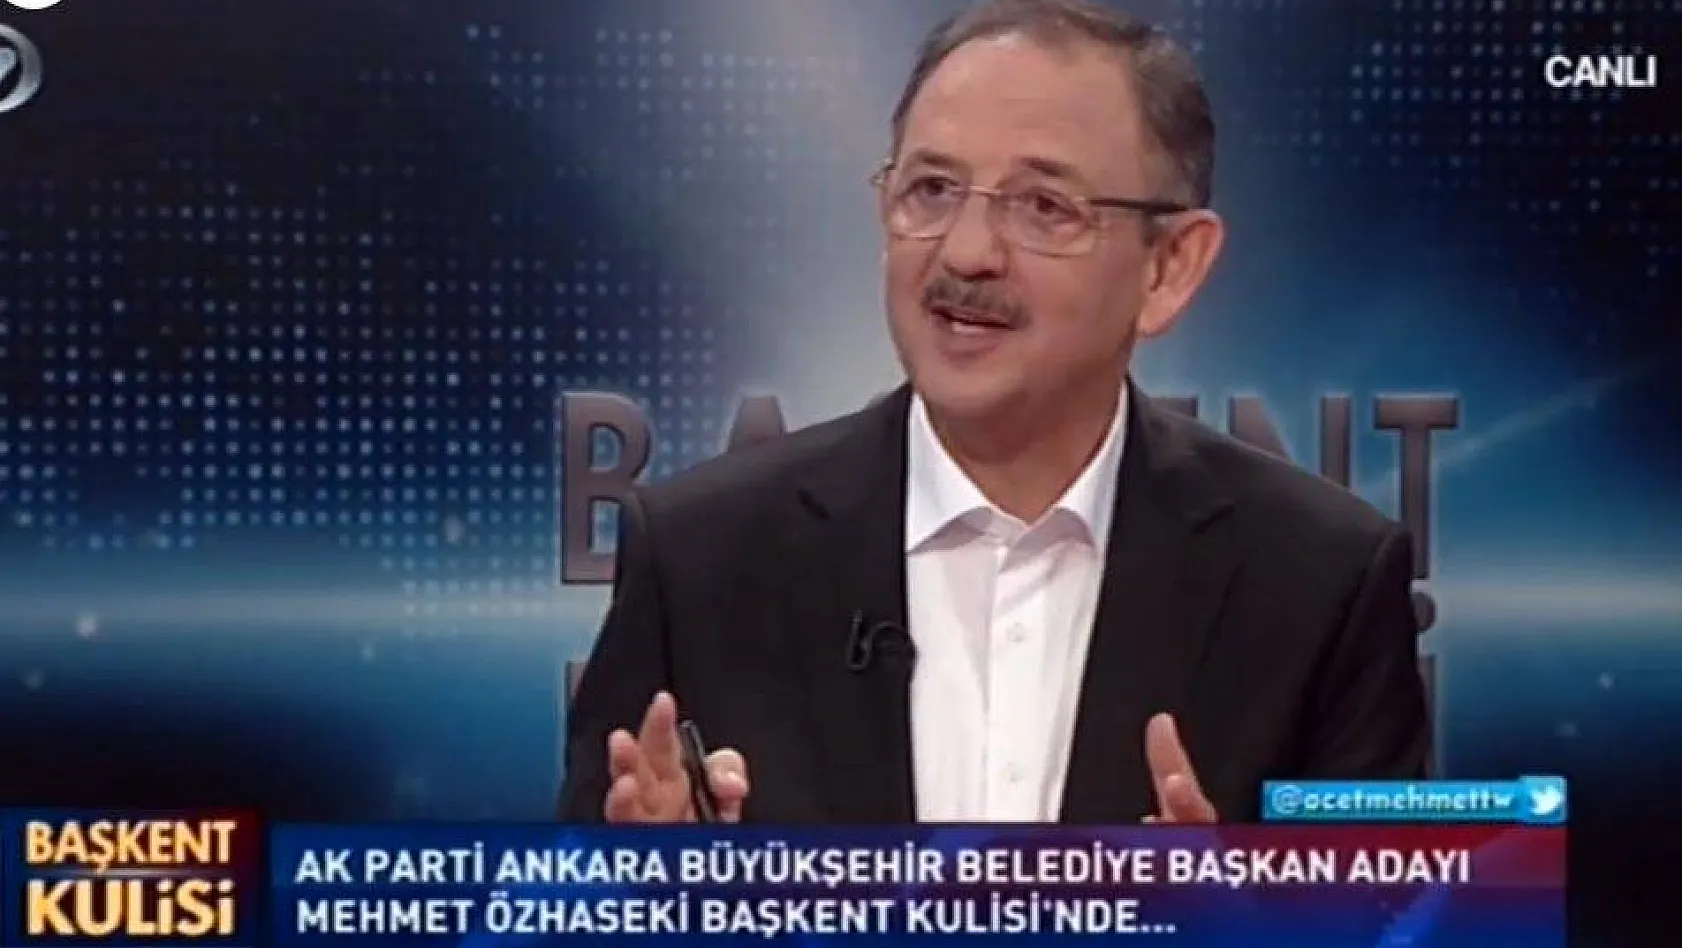 Özhaseki: Kayseri'de CHP'lilerin yüzde 40'ı bana oy verirdi